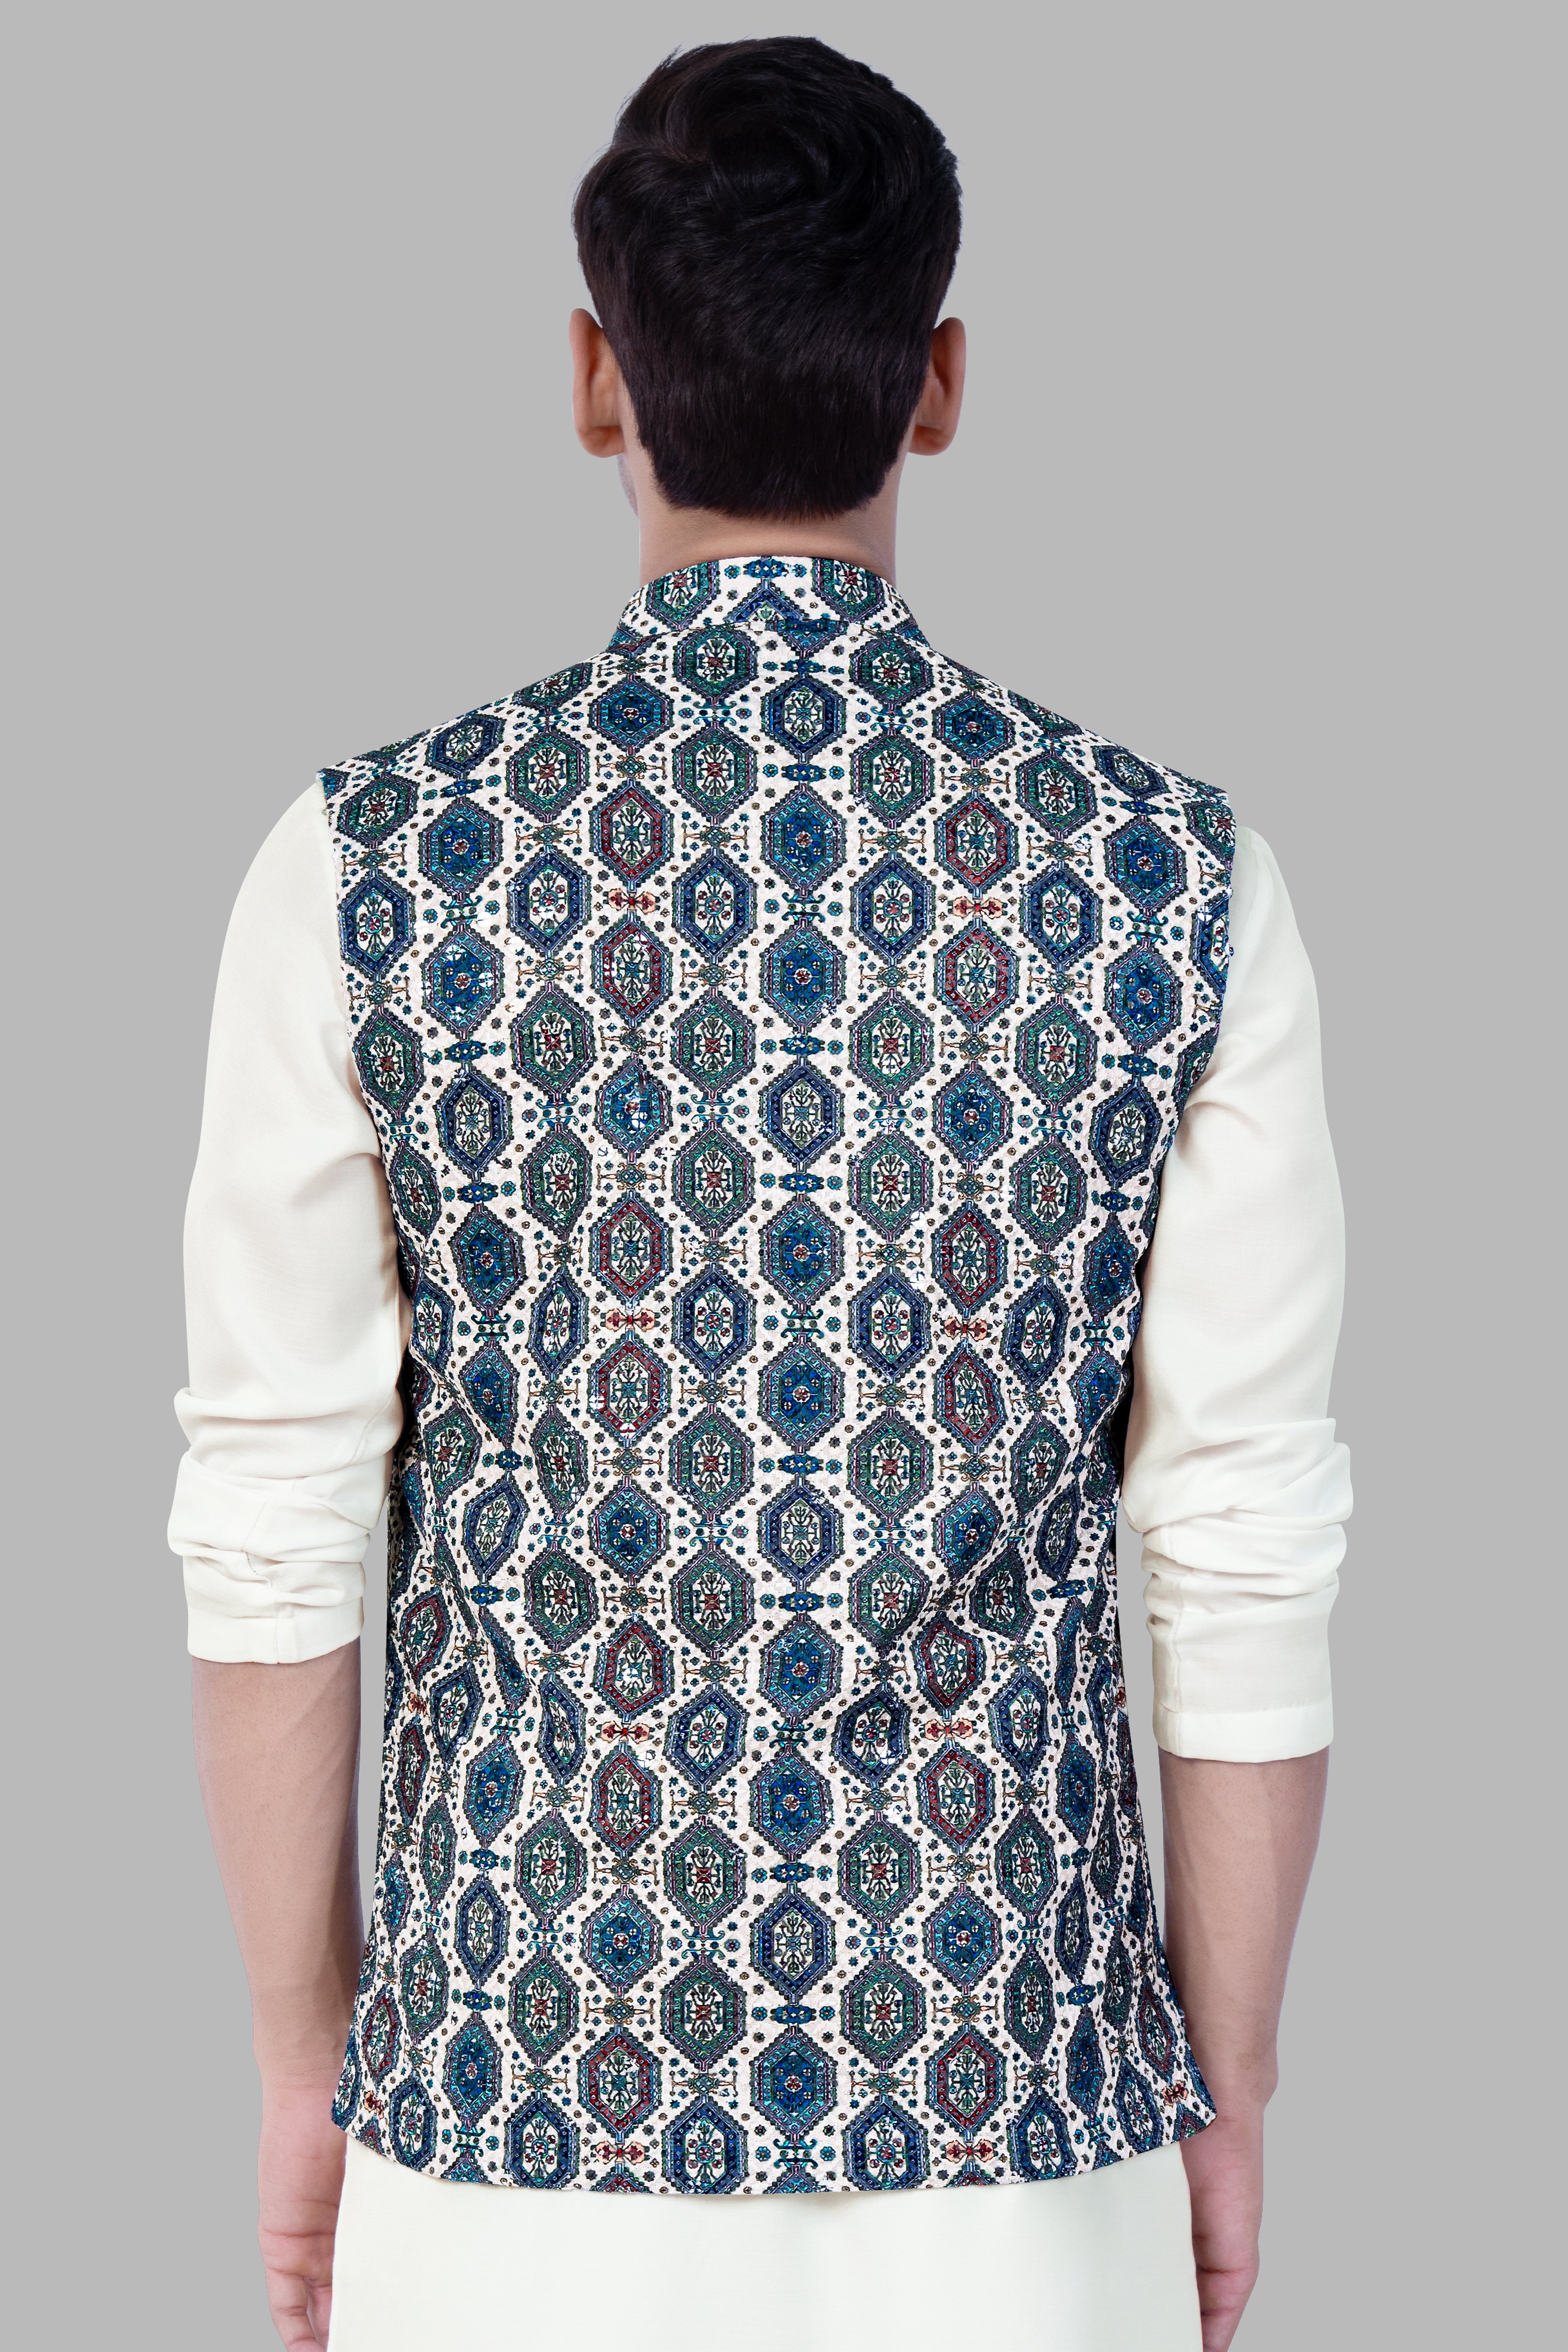 Bluish blue And Claret Red Thread Embroidered Nehru Jacket